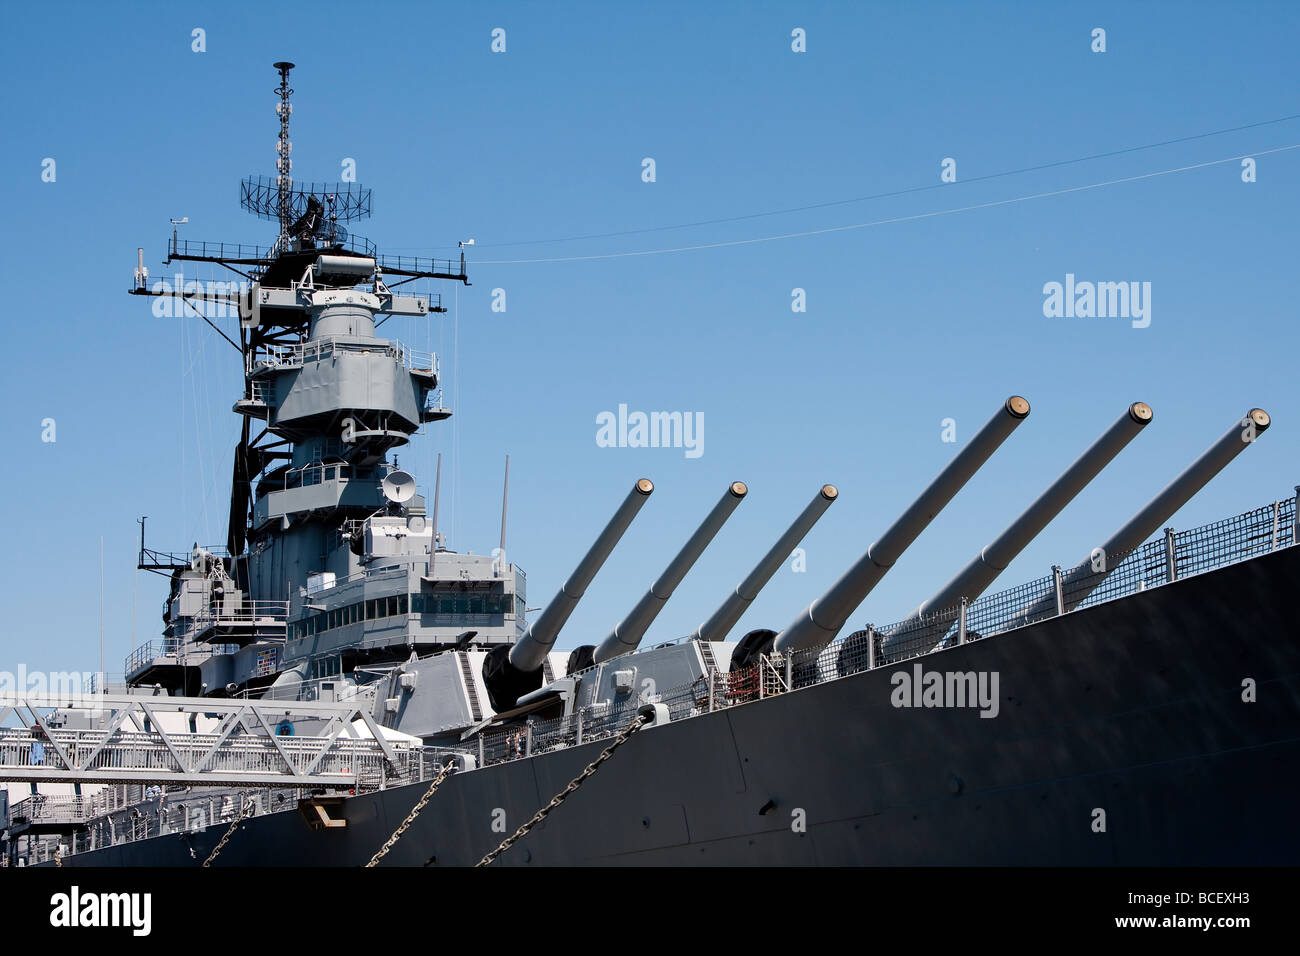 Tourelle de barils et la tour de contrôle avec le radar sur un militaire de la marine des États-Unis classe Iowa battleship Banque D'Images